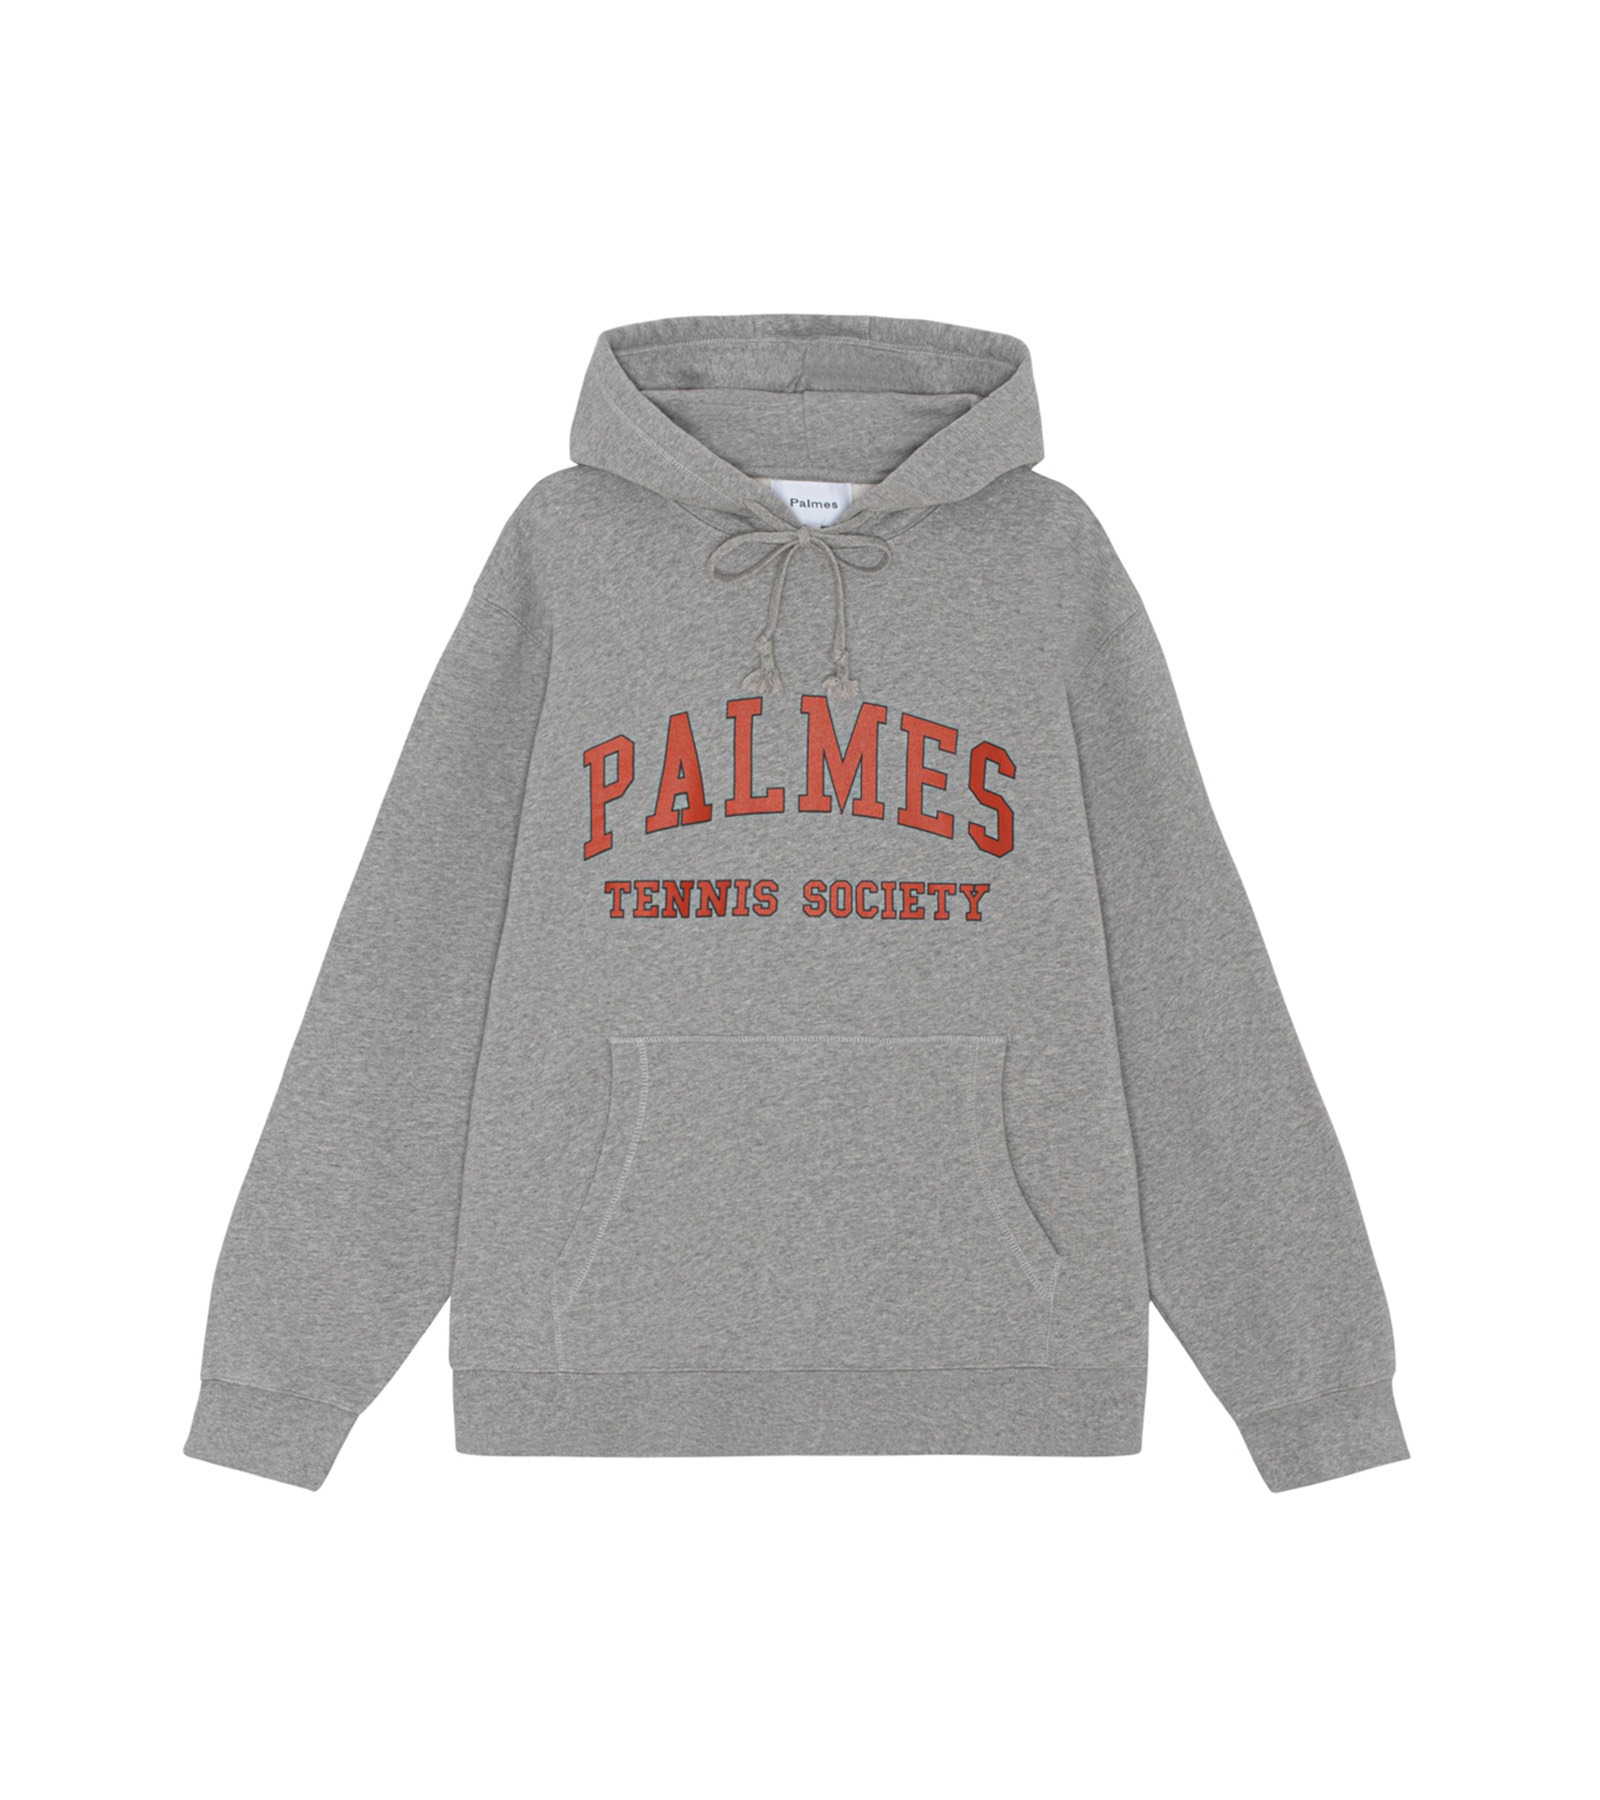 PALMES TENNIS SOCIETY - PALMES TENNIS SOCIETY - Casestudy